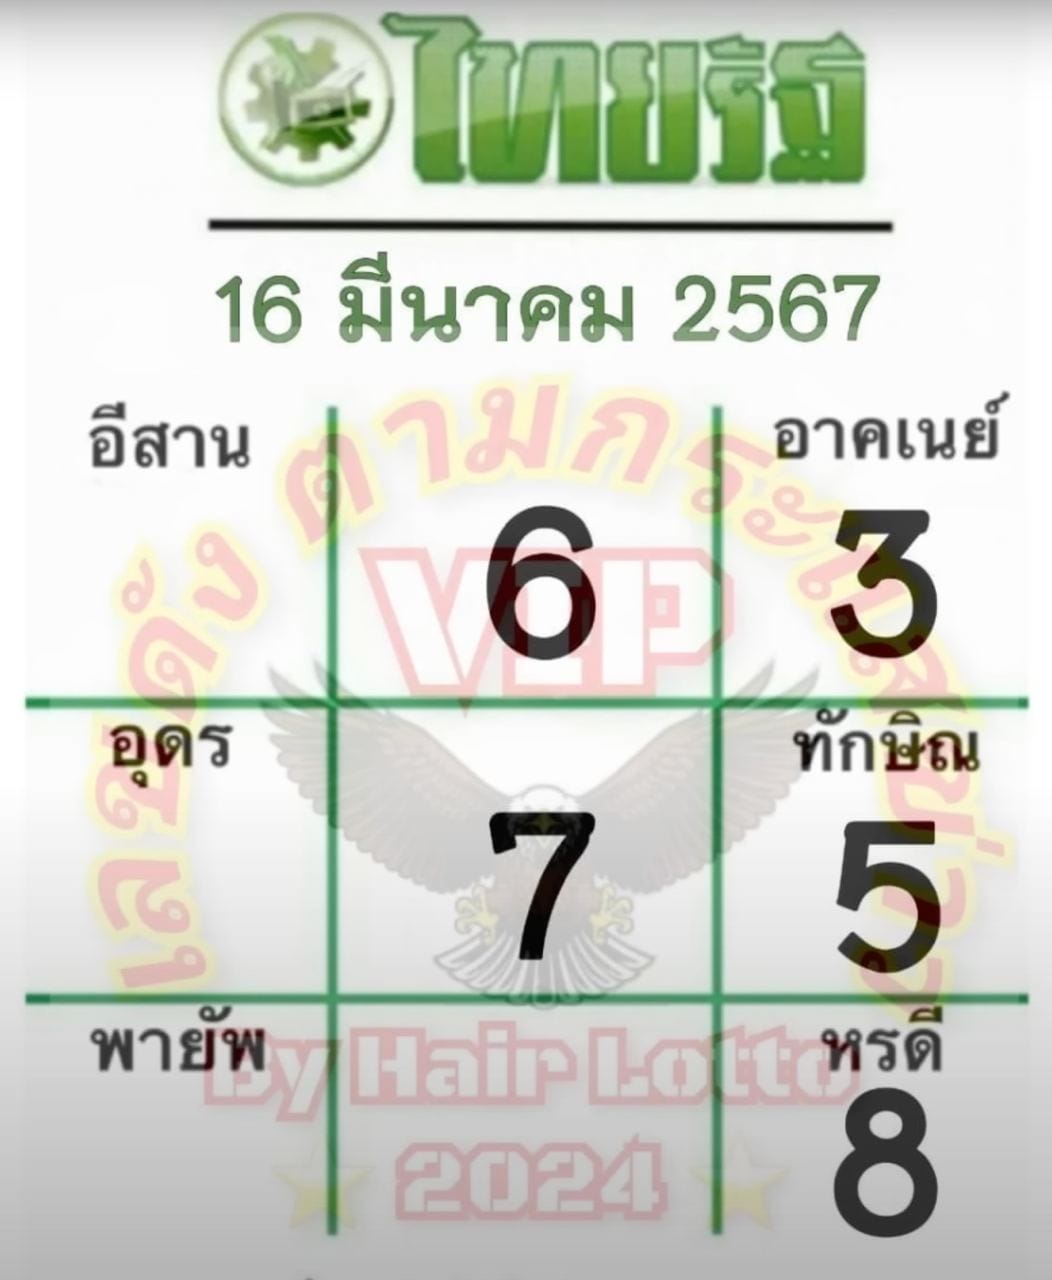 เลขไทยรัฐ - "Thairath number"